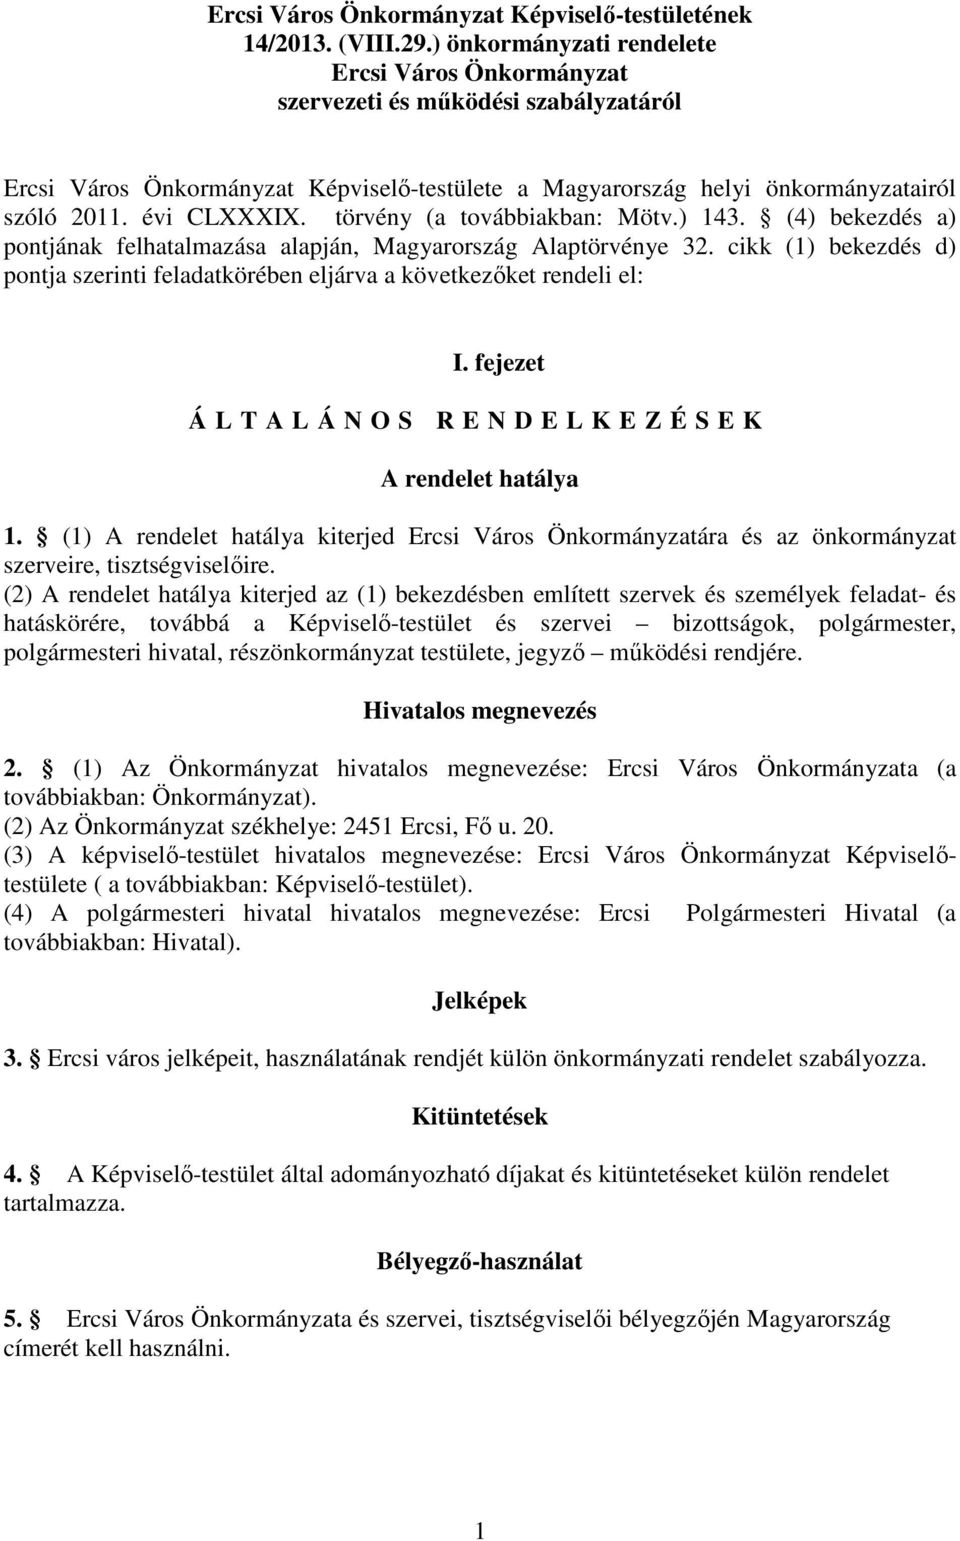 törvény (a továbbiakban: Mötv.) 143. (4) bekezdés a) pontjának felhatalmazása alapján, Magyarország Alaptörvénye 32.